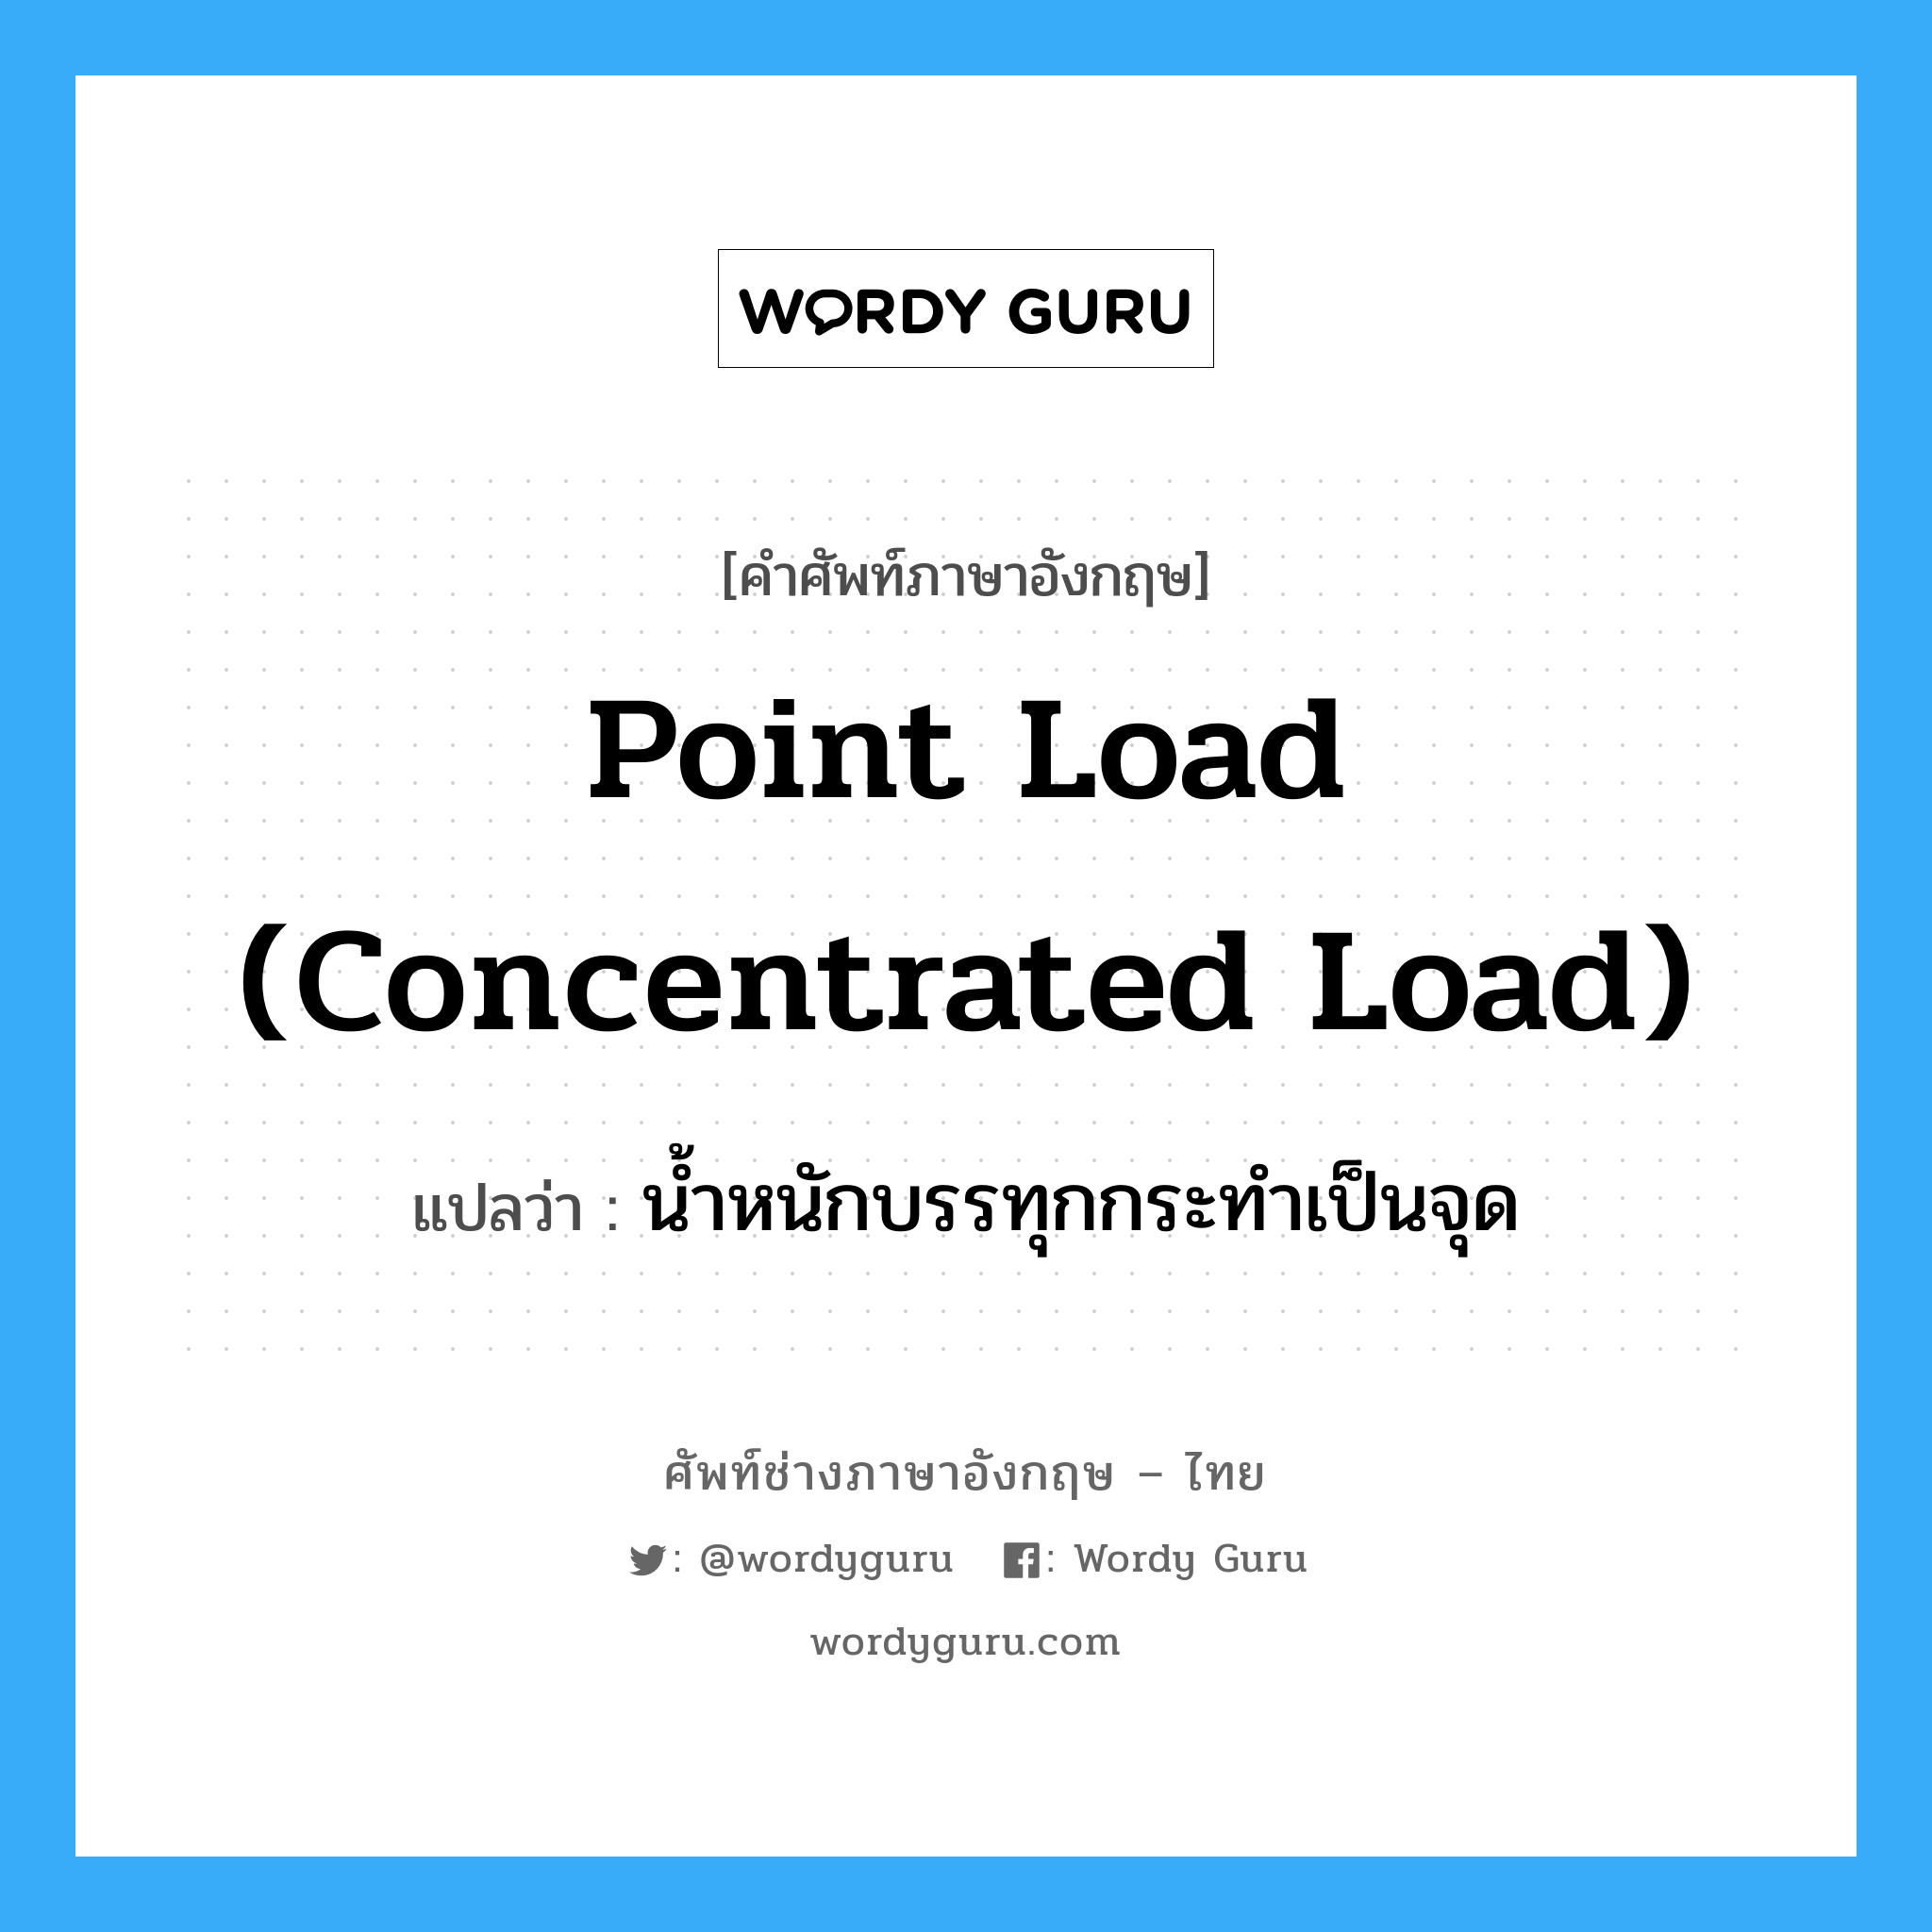 น้ำหนักบรรทุกกระทำเป็นจุด ภาษาอังกฤษ?, คำศัพท์ช่างภาษาอังกฤษ - ไทย น้ำหนักบรรทุกกระทำเป็นจุด คำศัพท์ภาษาอังกฤษ น้ำหนักบรรทุกกระทำเป็นจุด แปลว่า point load (concentrated load)